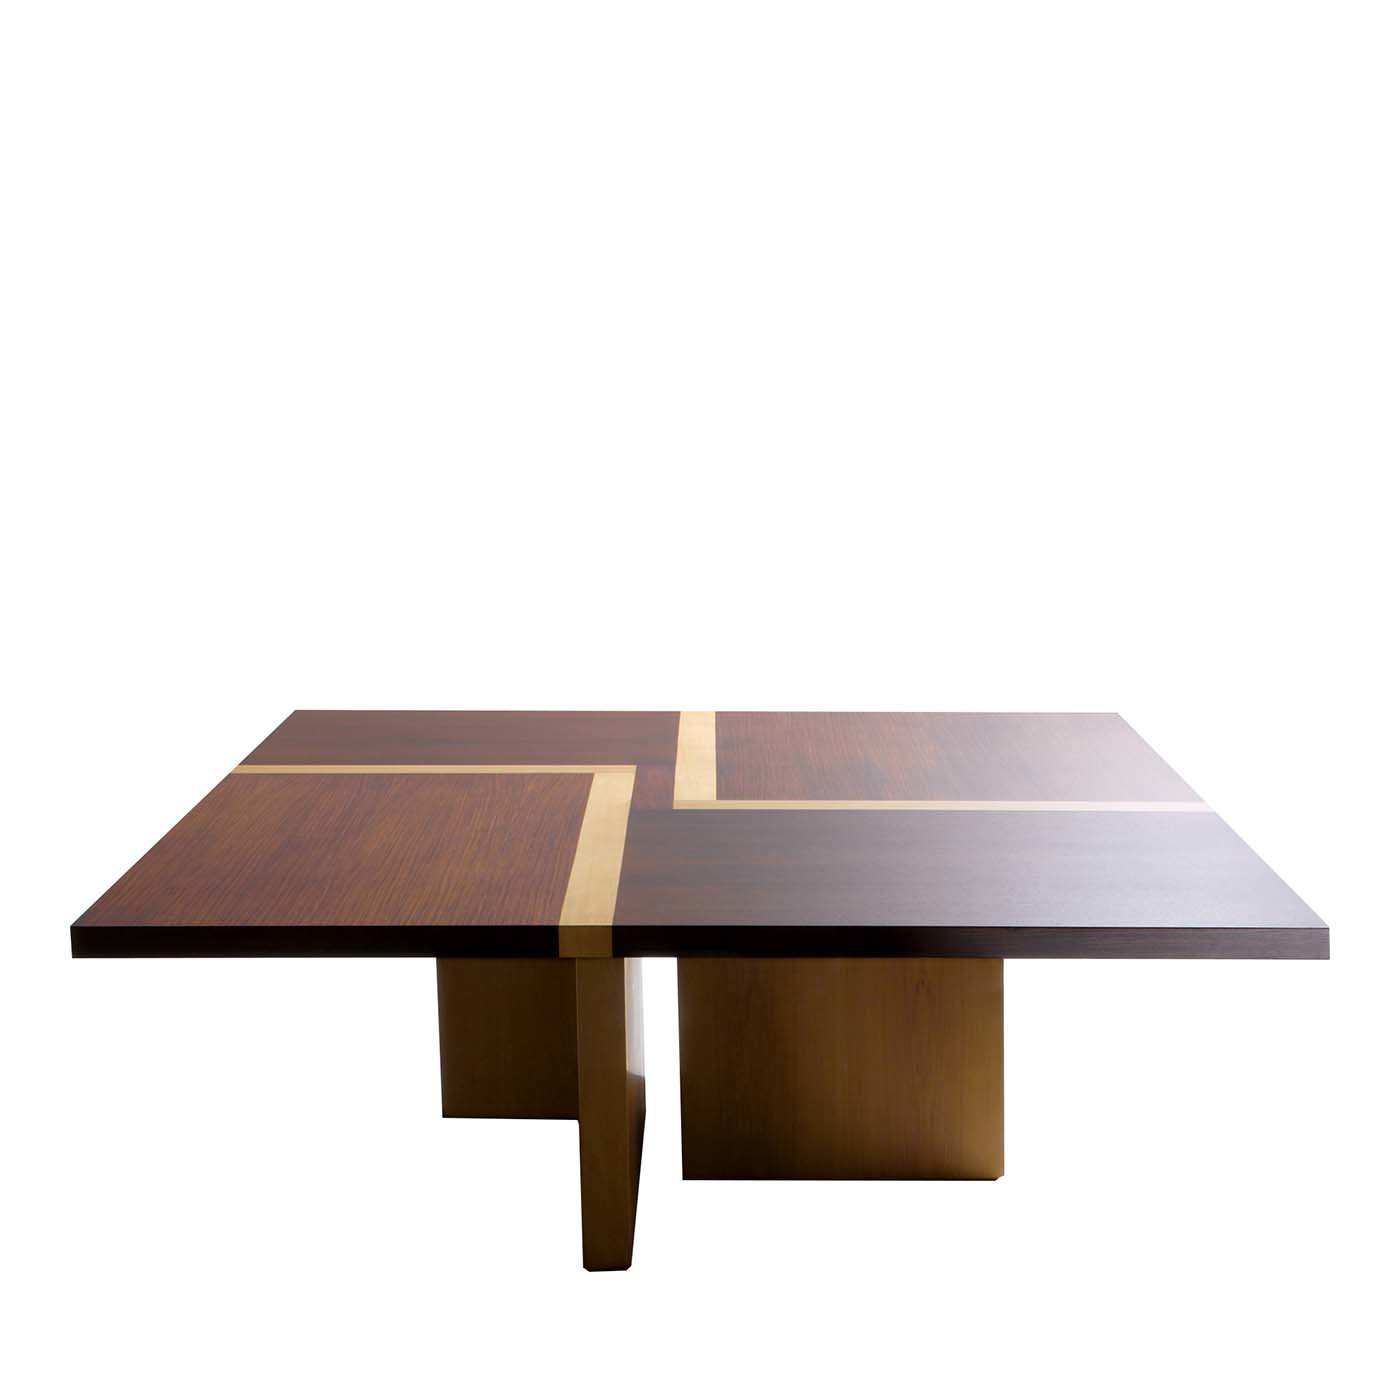 BD 07 Quadratischer Tisch von Bartoli Design - Hauptansicht